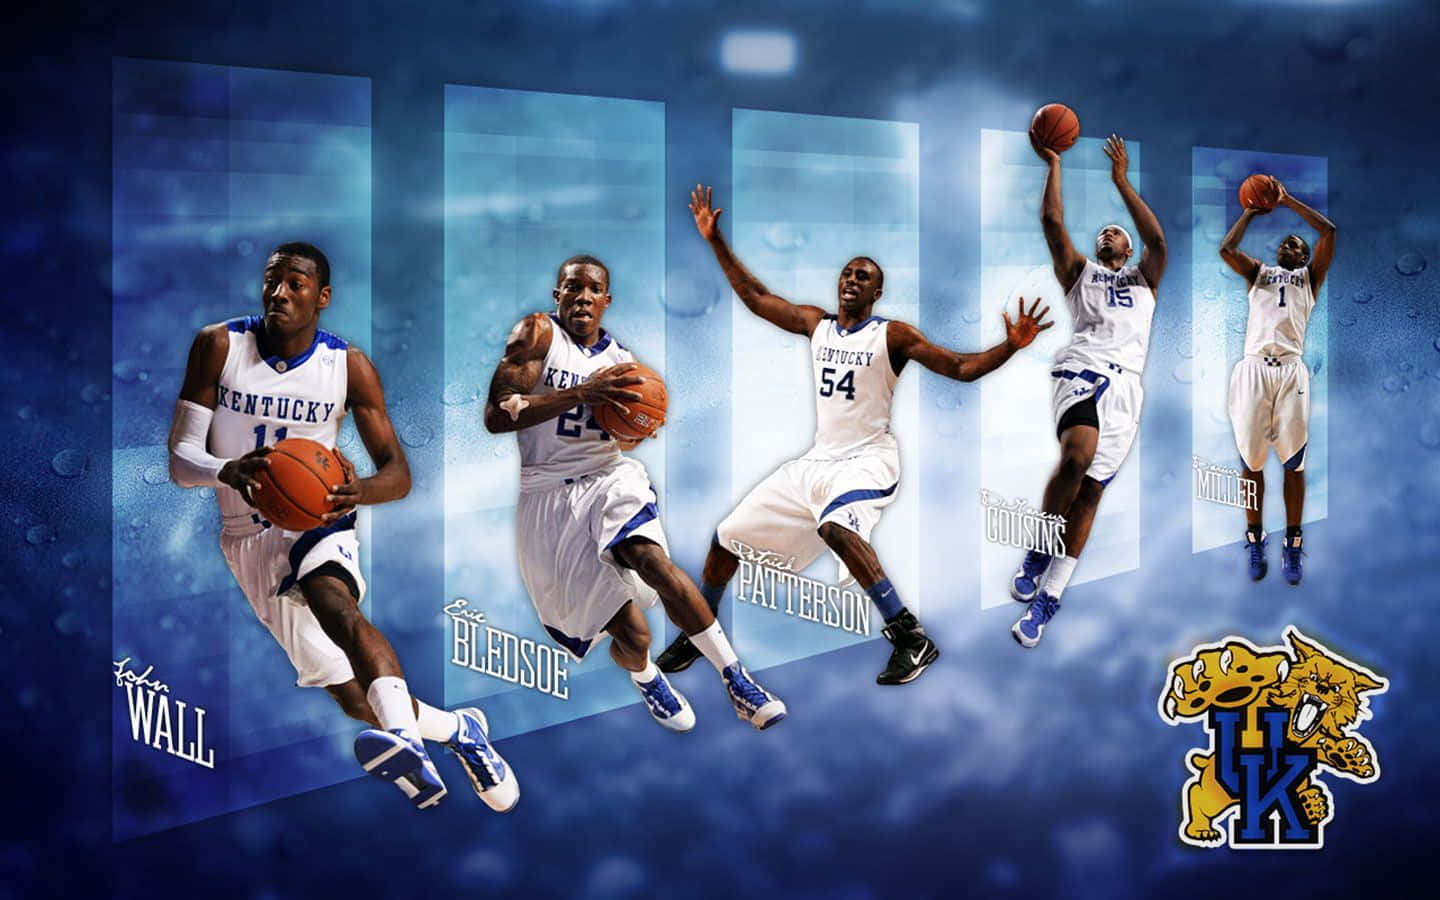 Die Basketballmannschaft Der Kentucky Wildcats Mit John Wall. Wallpaper